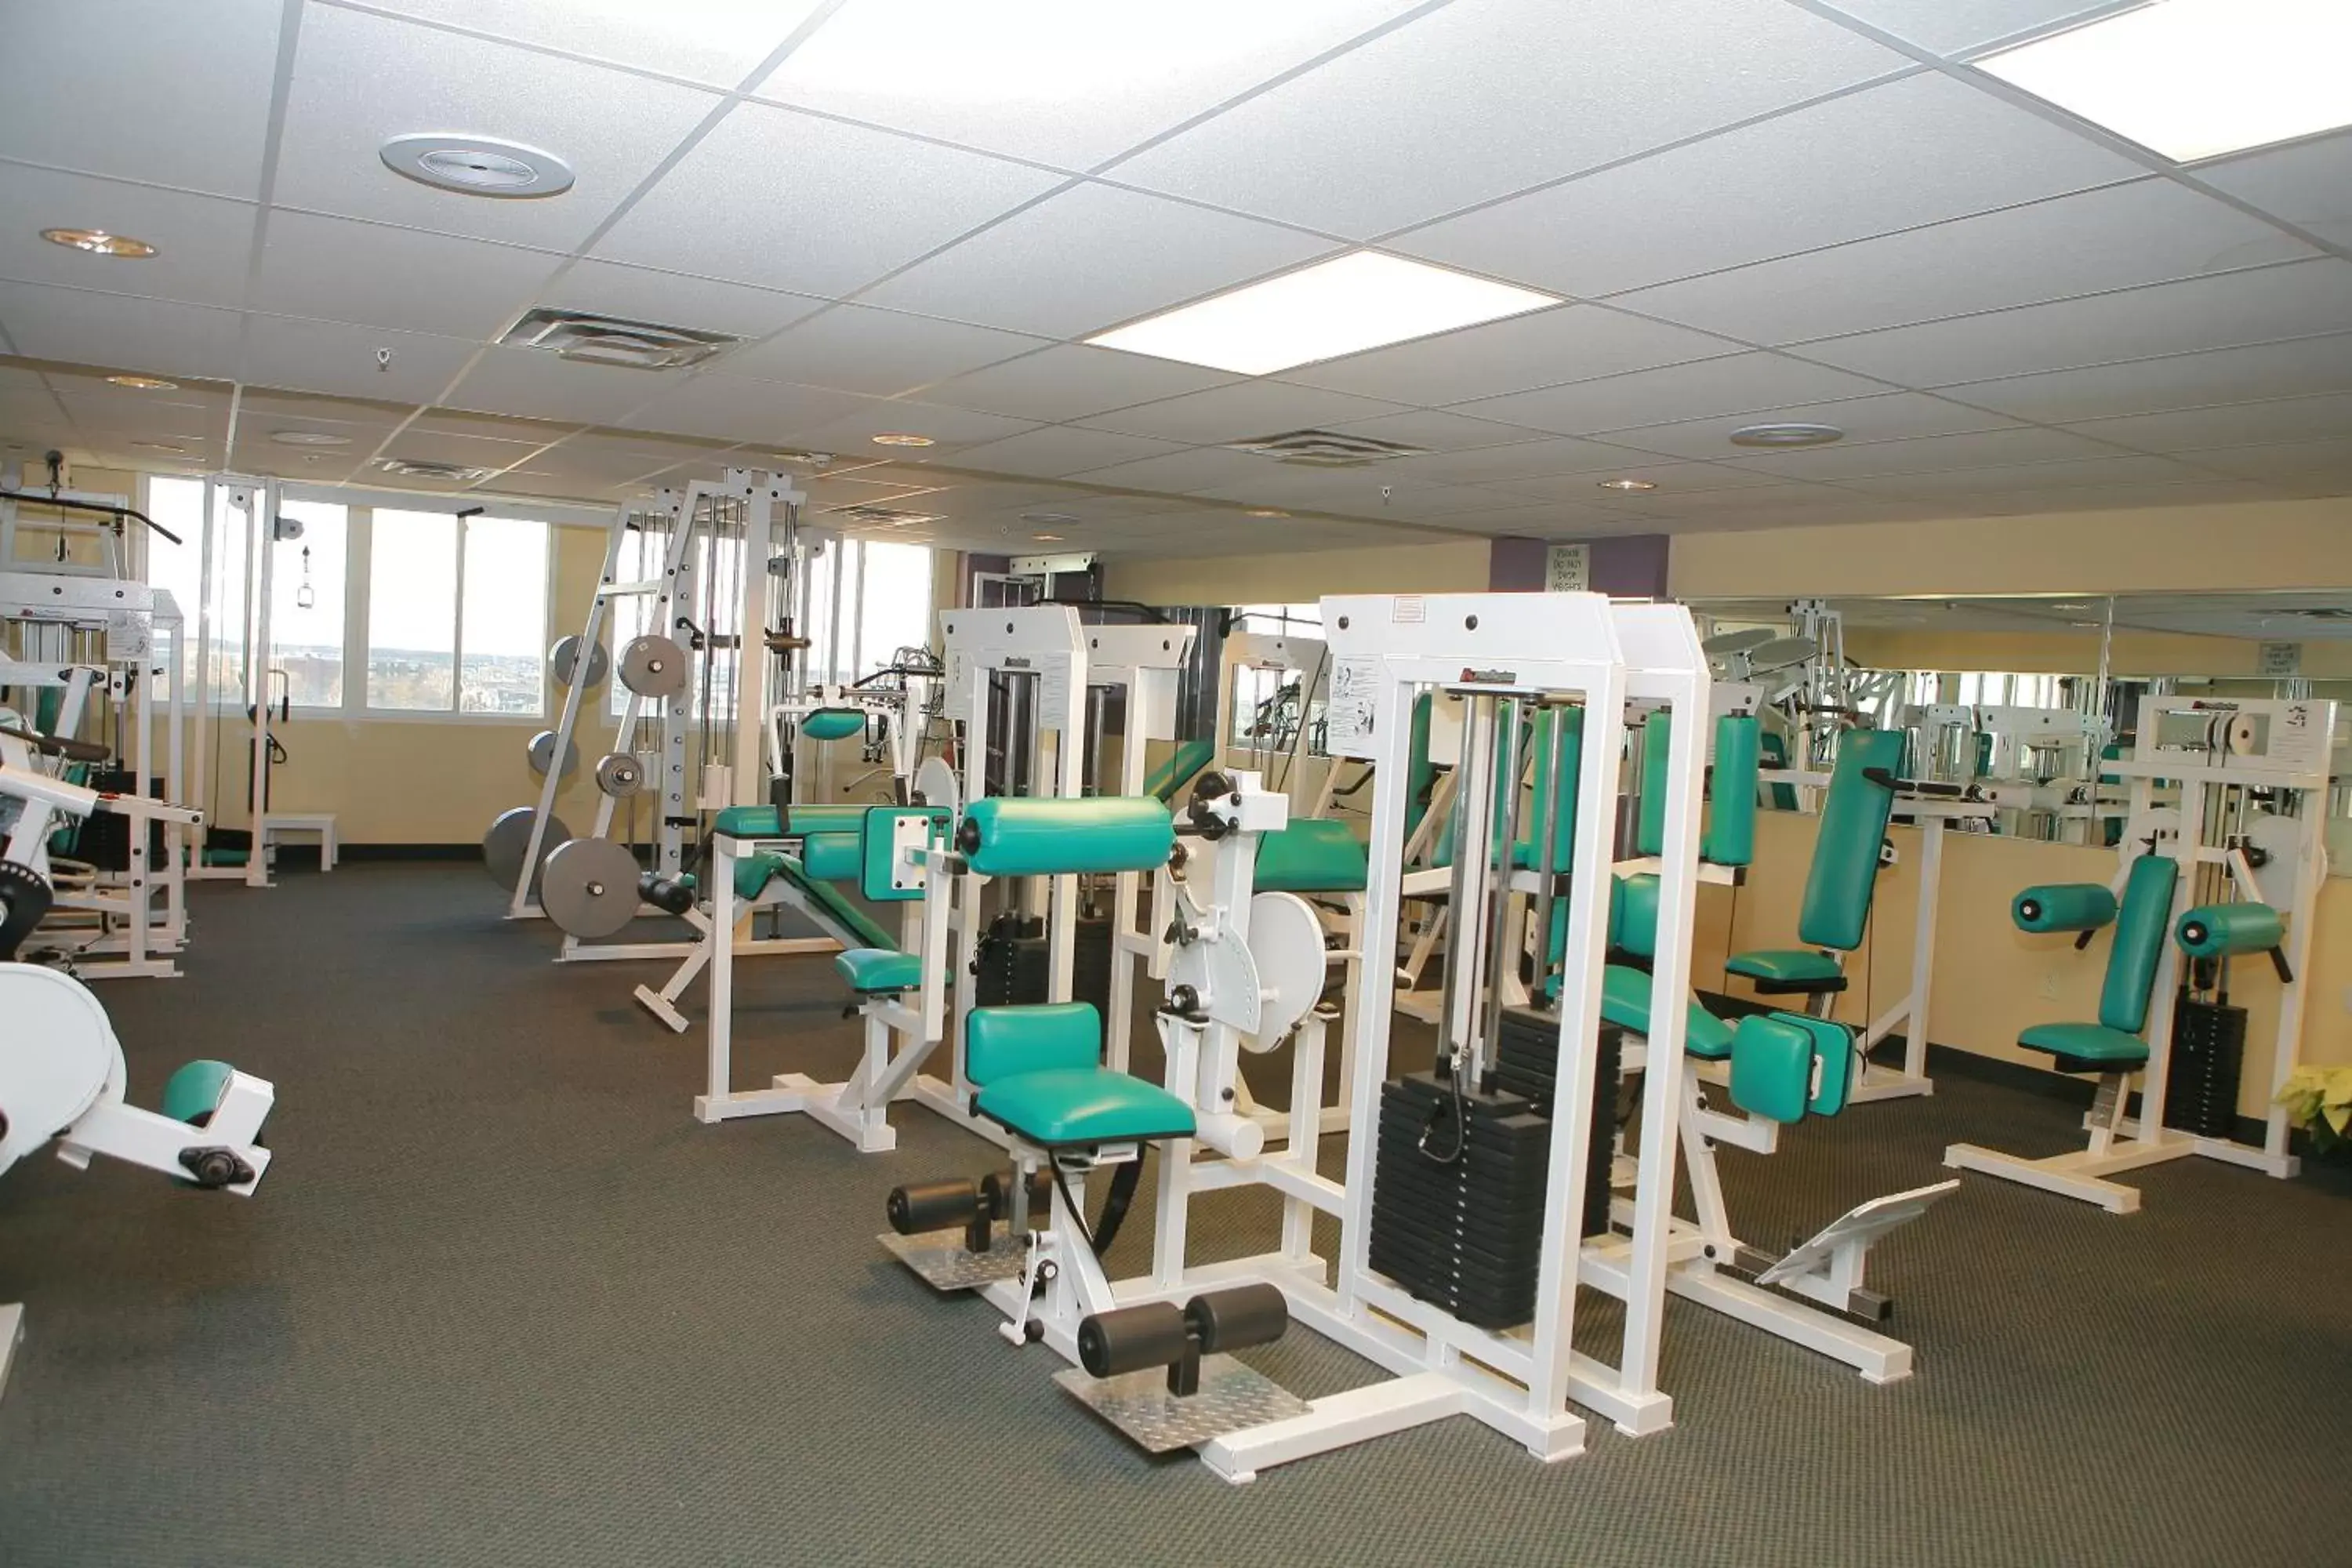 Fitness centre/facilities, Fitness Center/Facilities in Bolero Resort